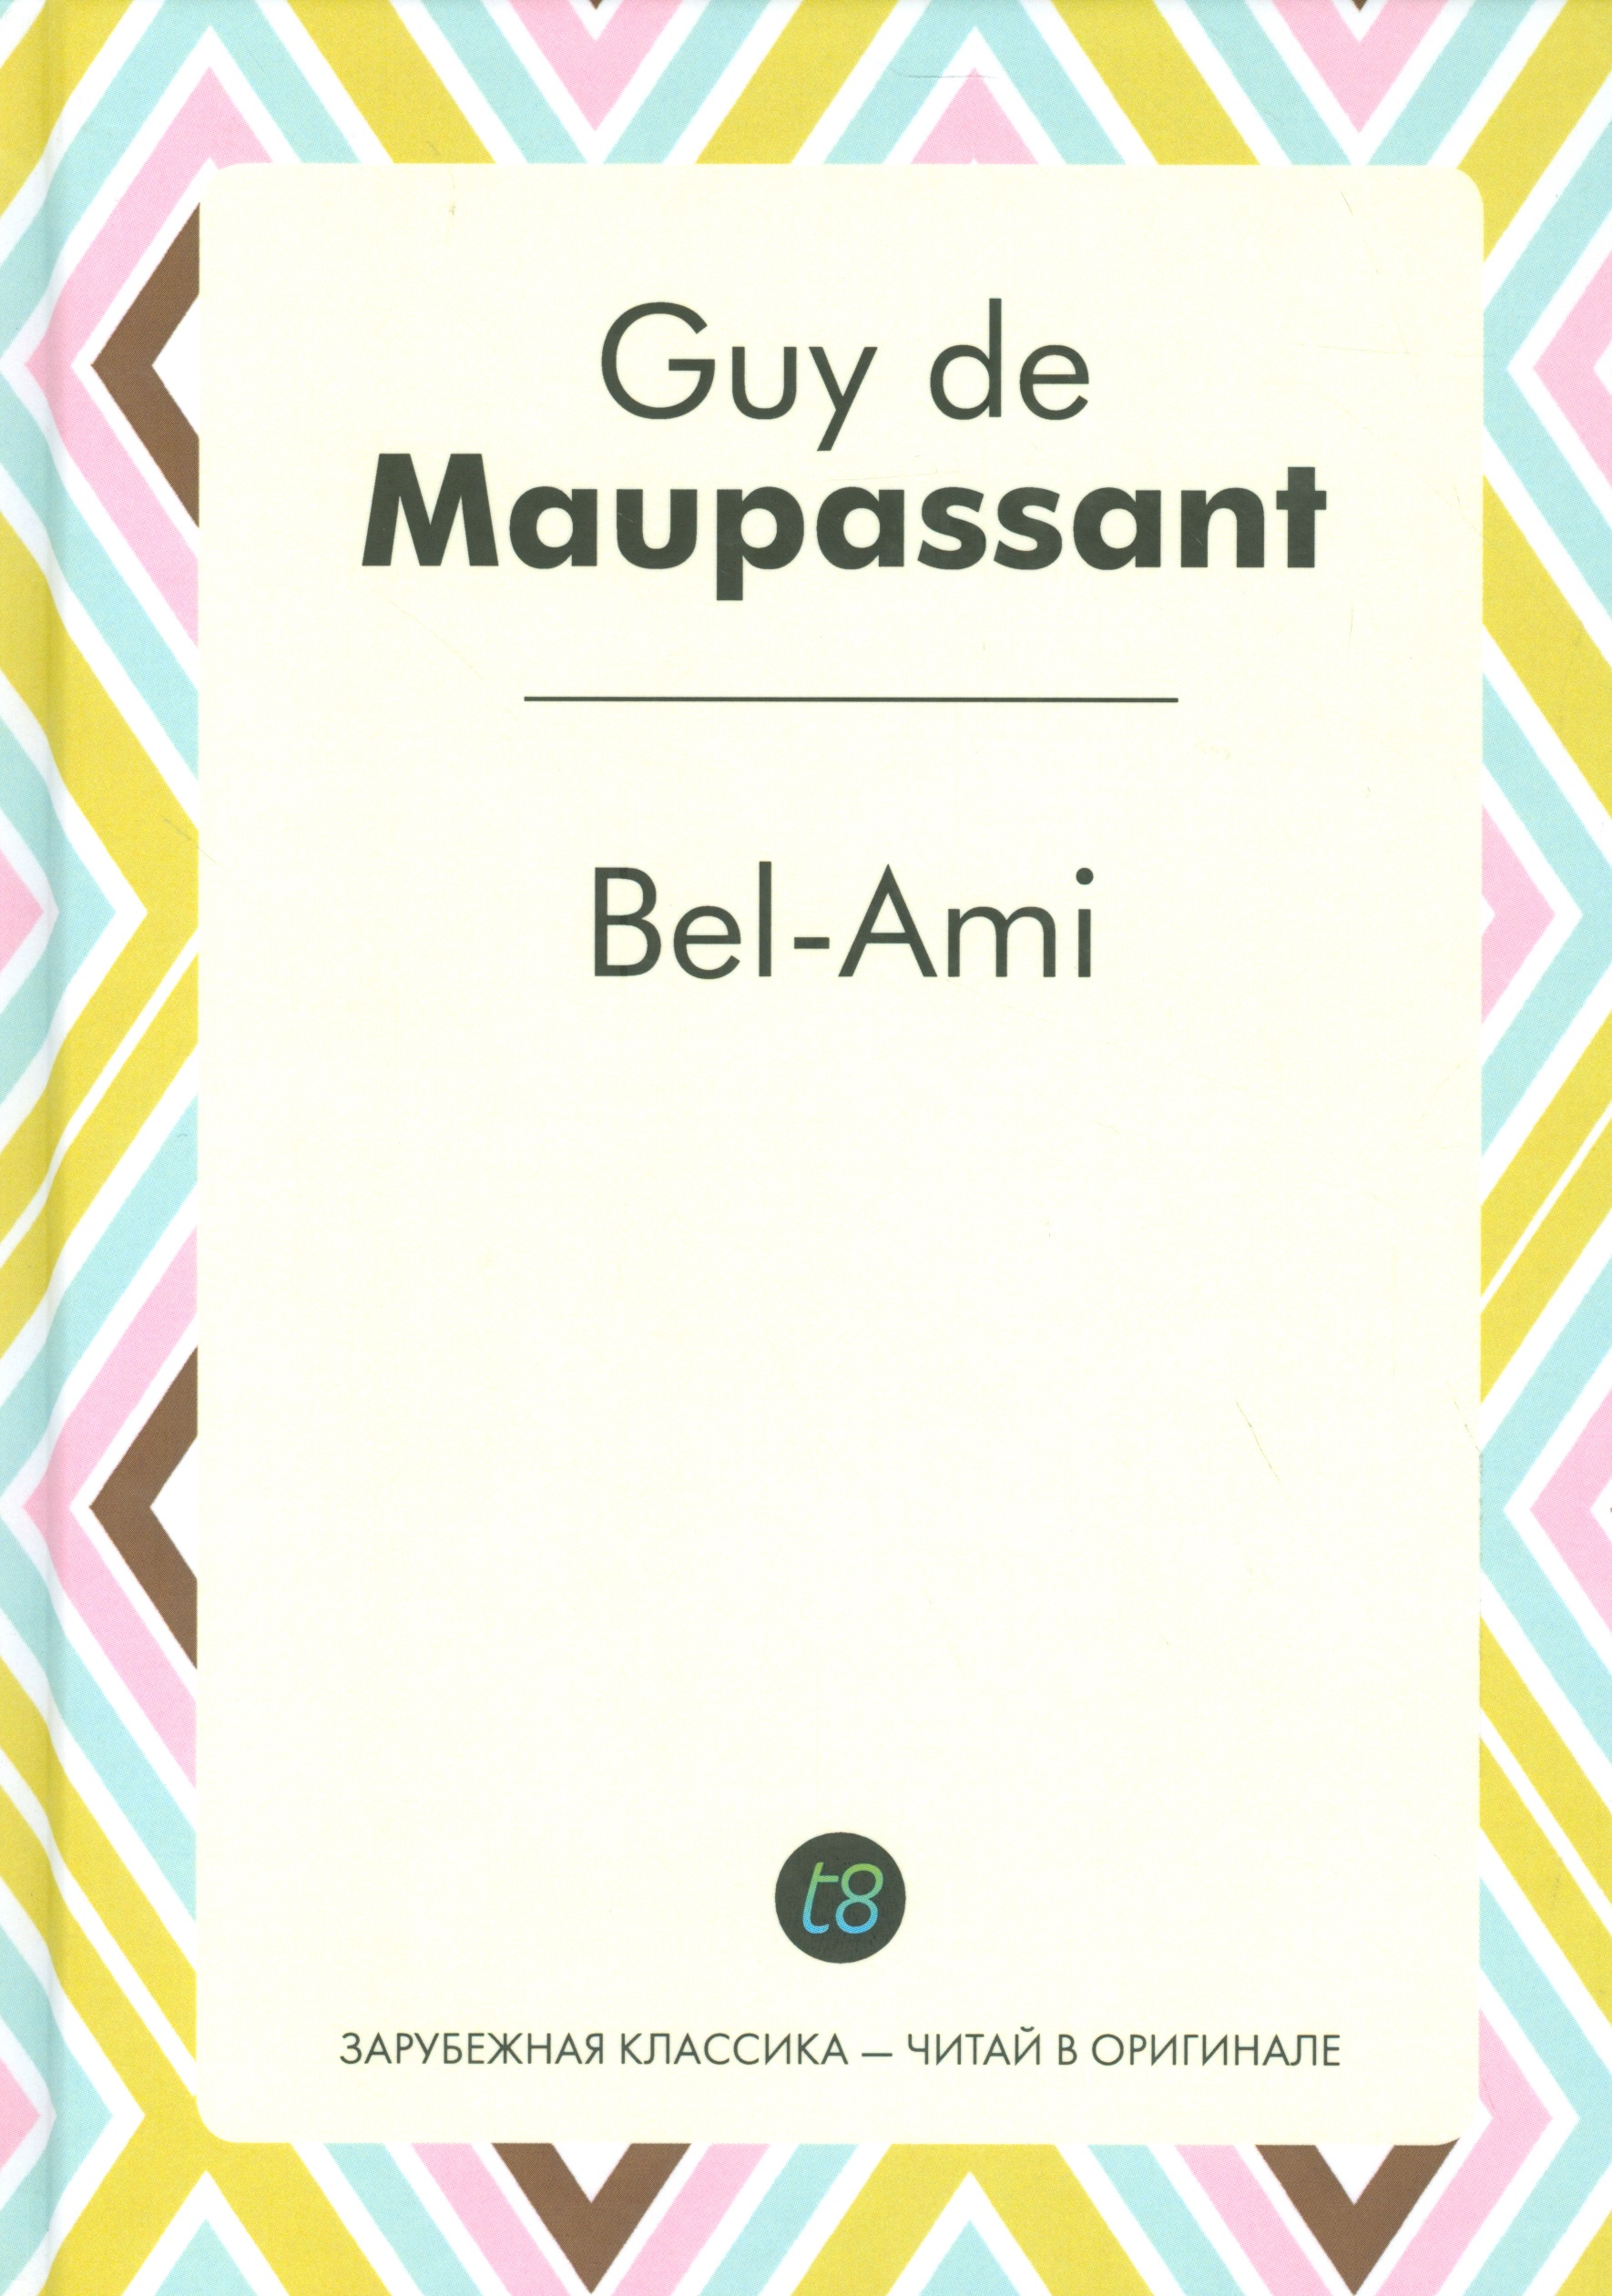 Bel-Ami () Maupassant ( . .)